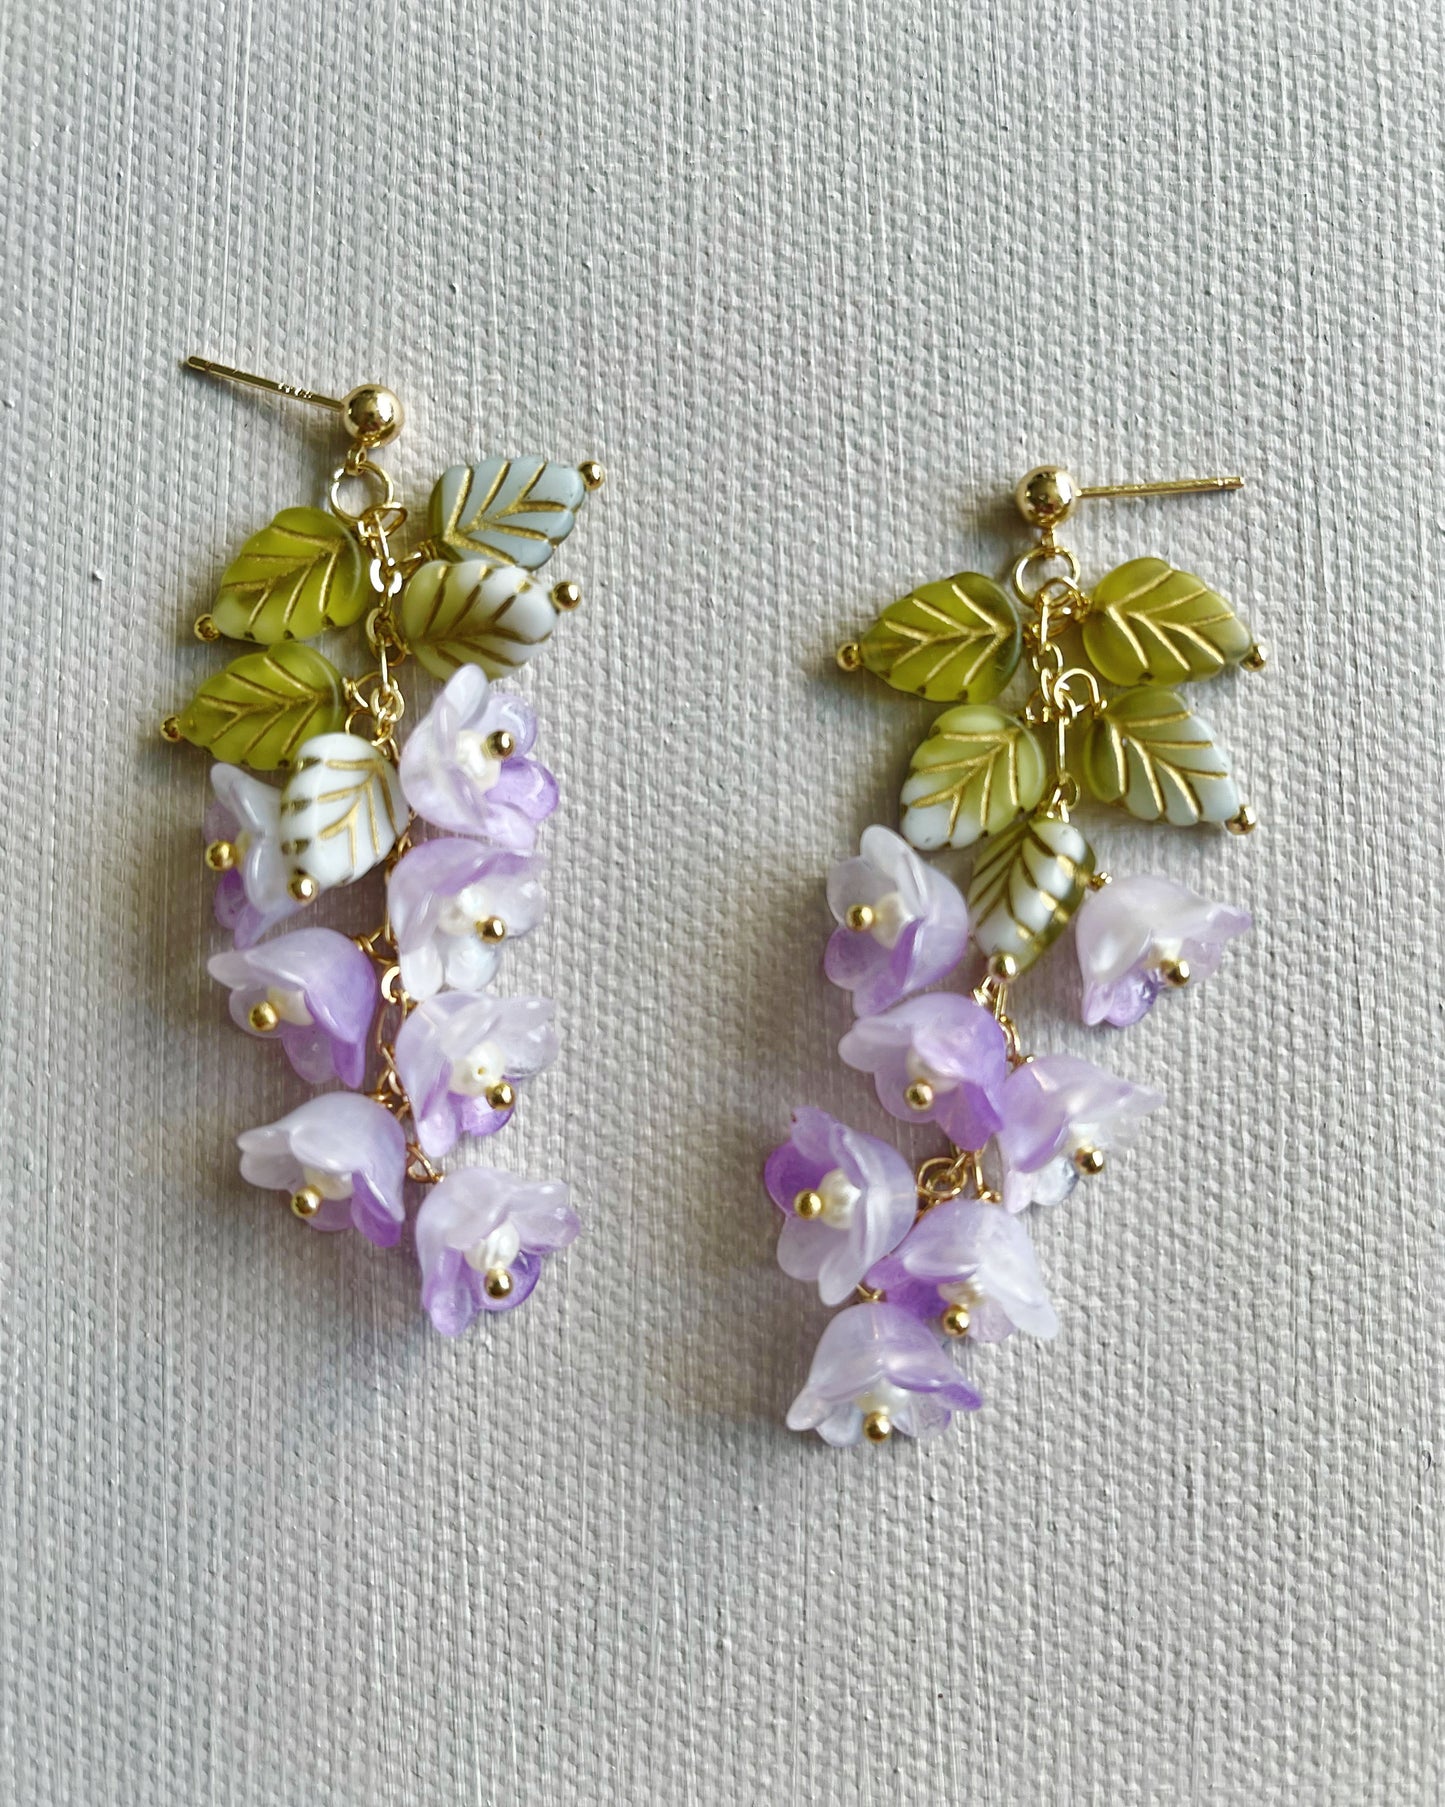 Spring Canterbury bell flowers earrings in purple